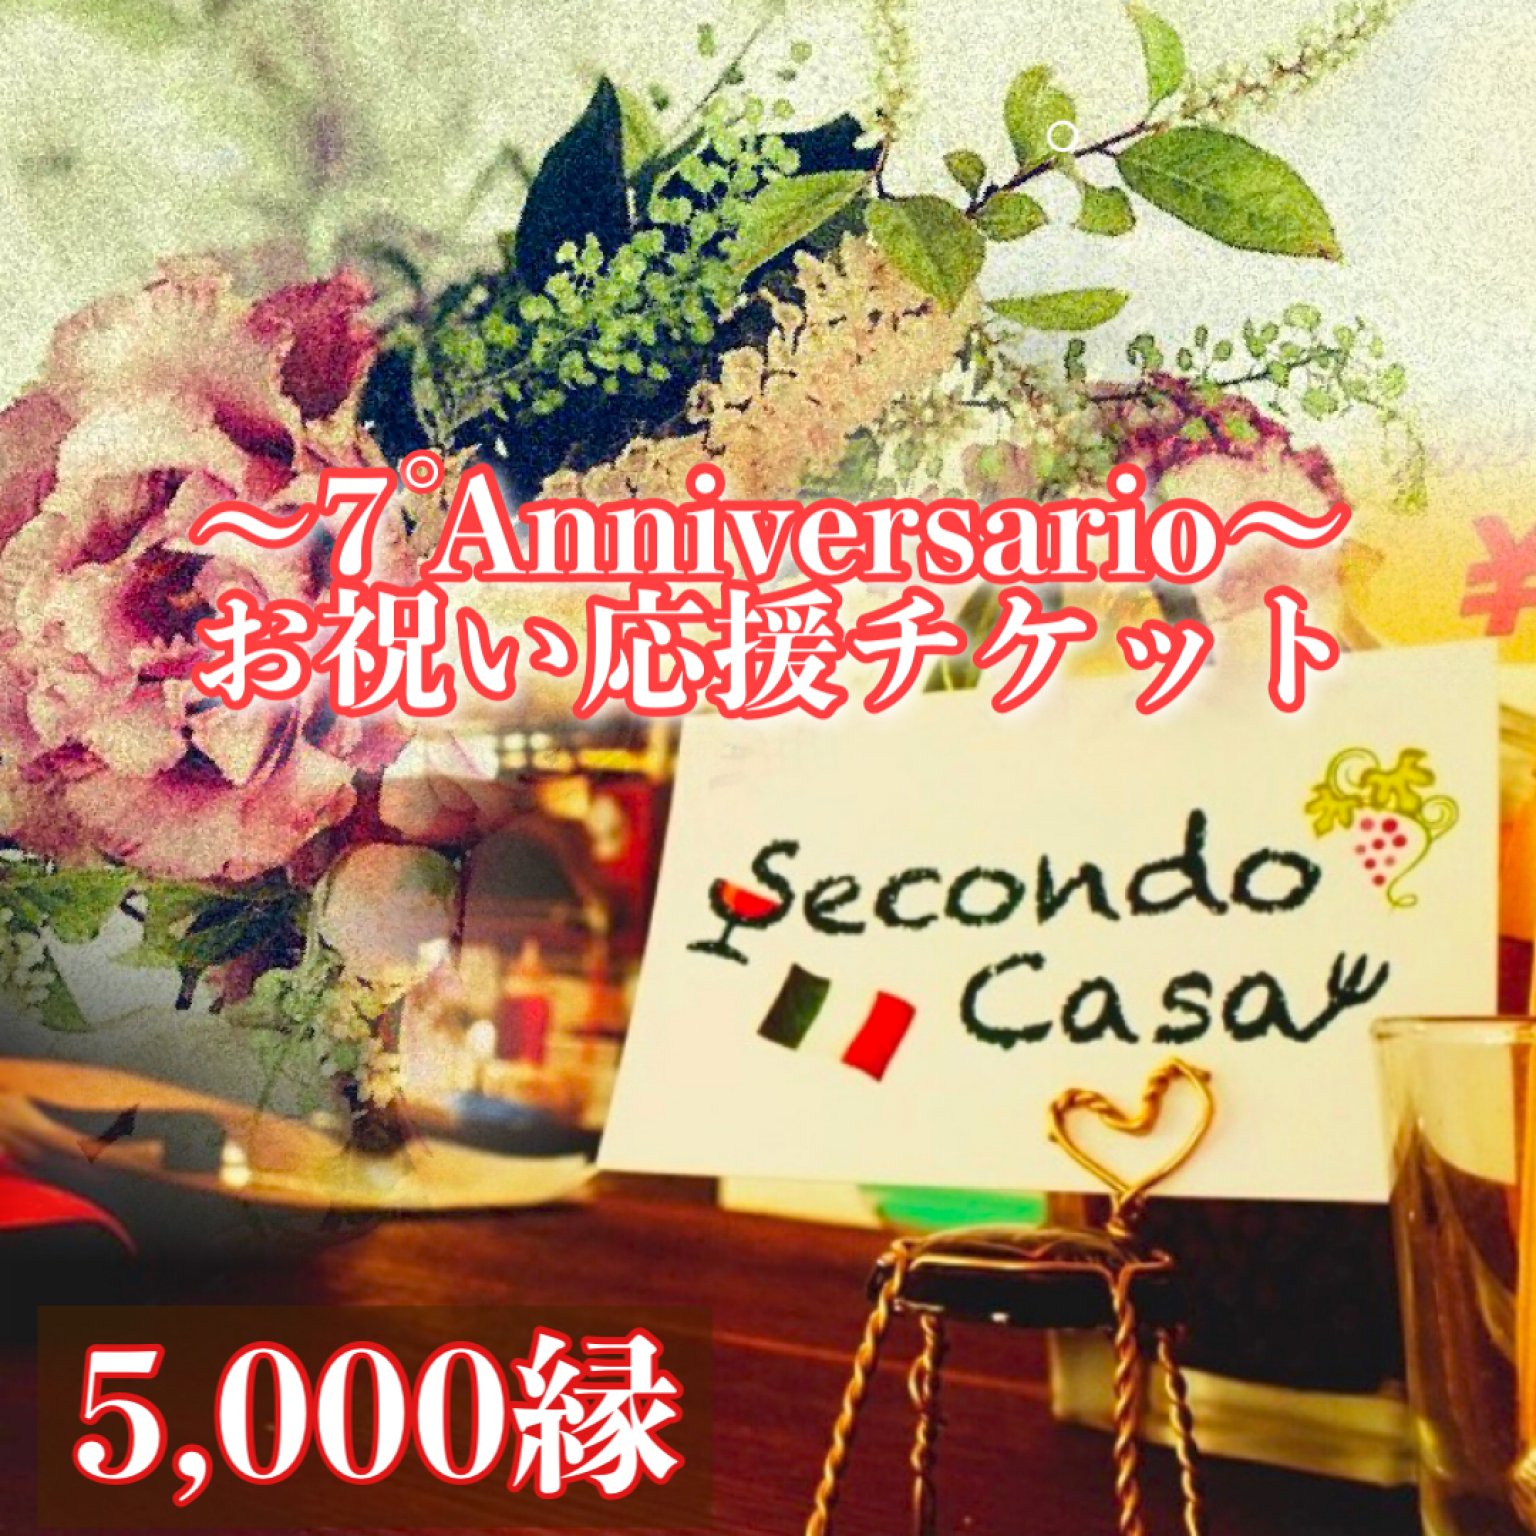 【SecondoCasa】7周年/5000縁/お祝い応援チケット